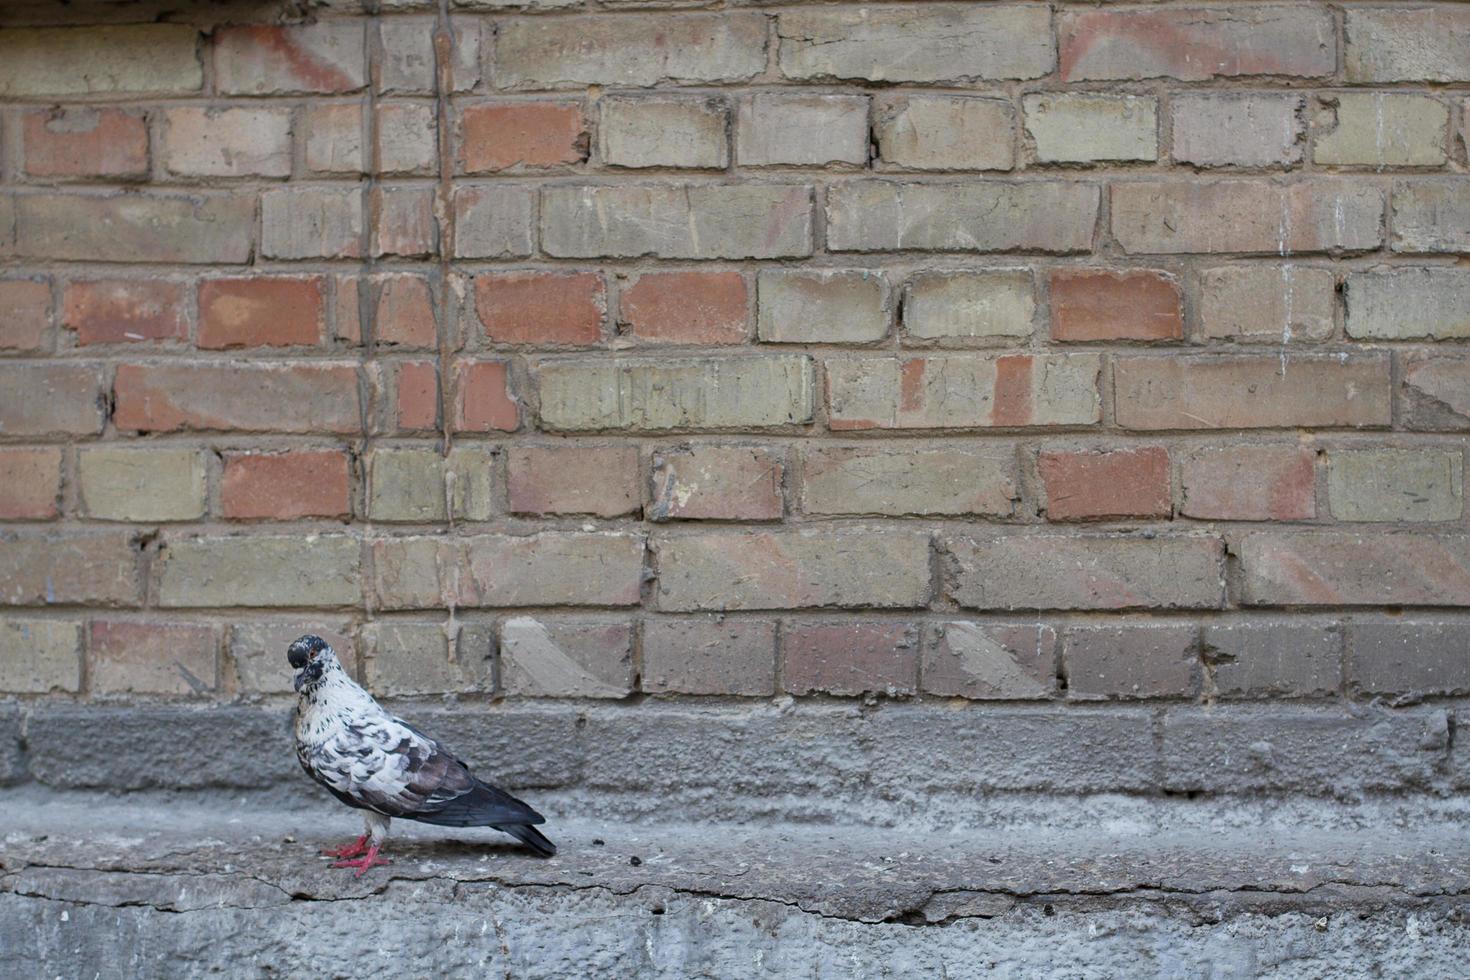 colombe et mur.oiseau et vieux mur. colombe grise assise sur un mur vintage. oiseaux et murs. photo